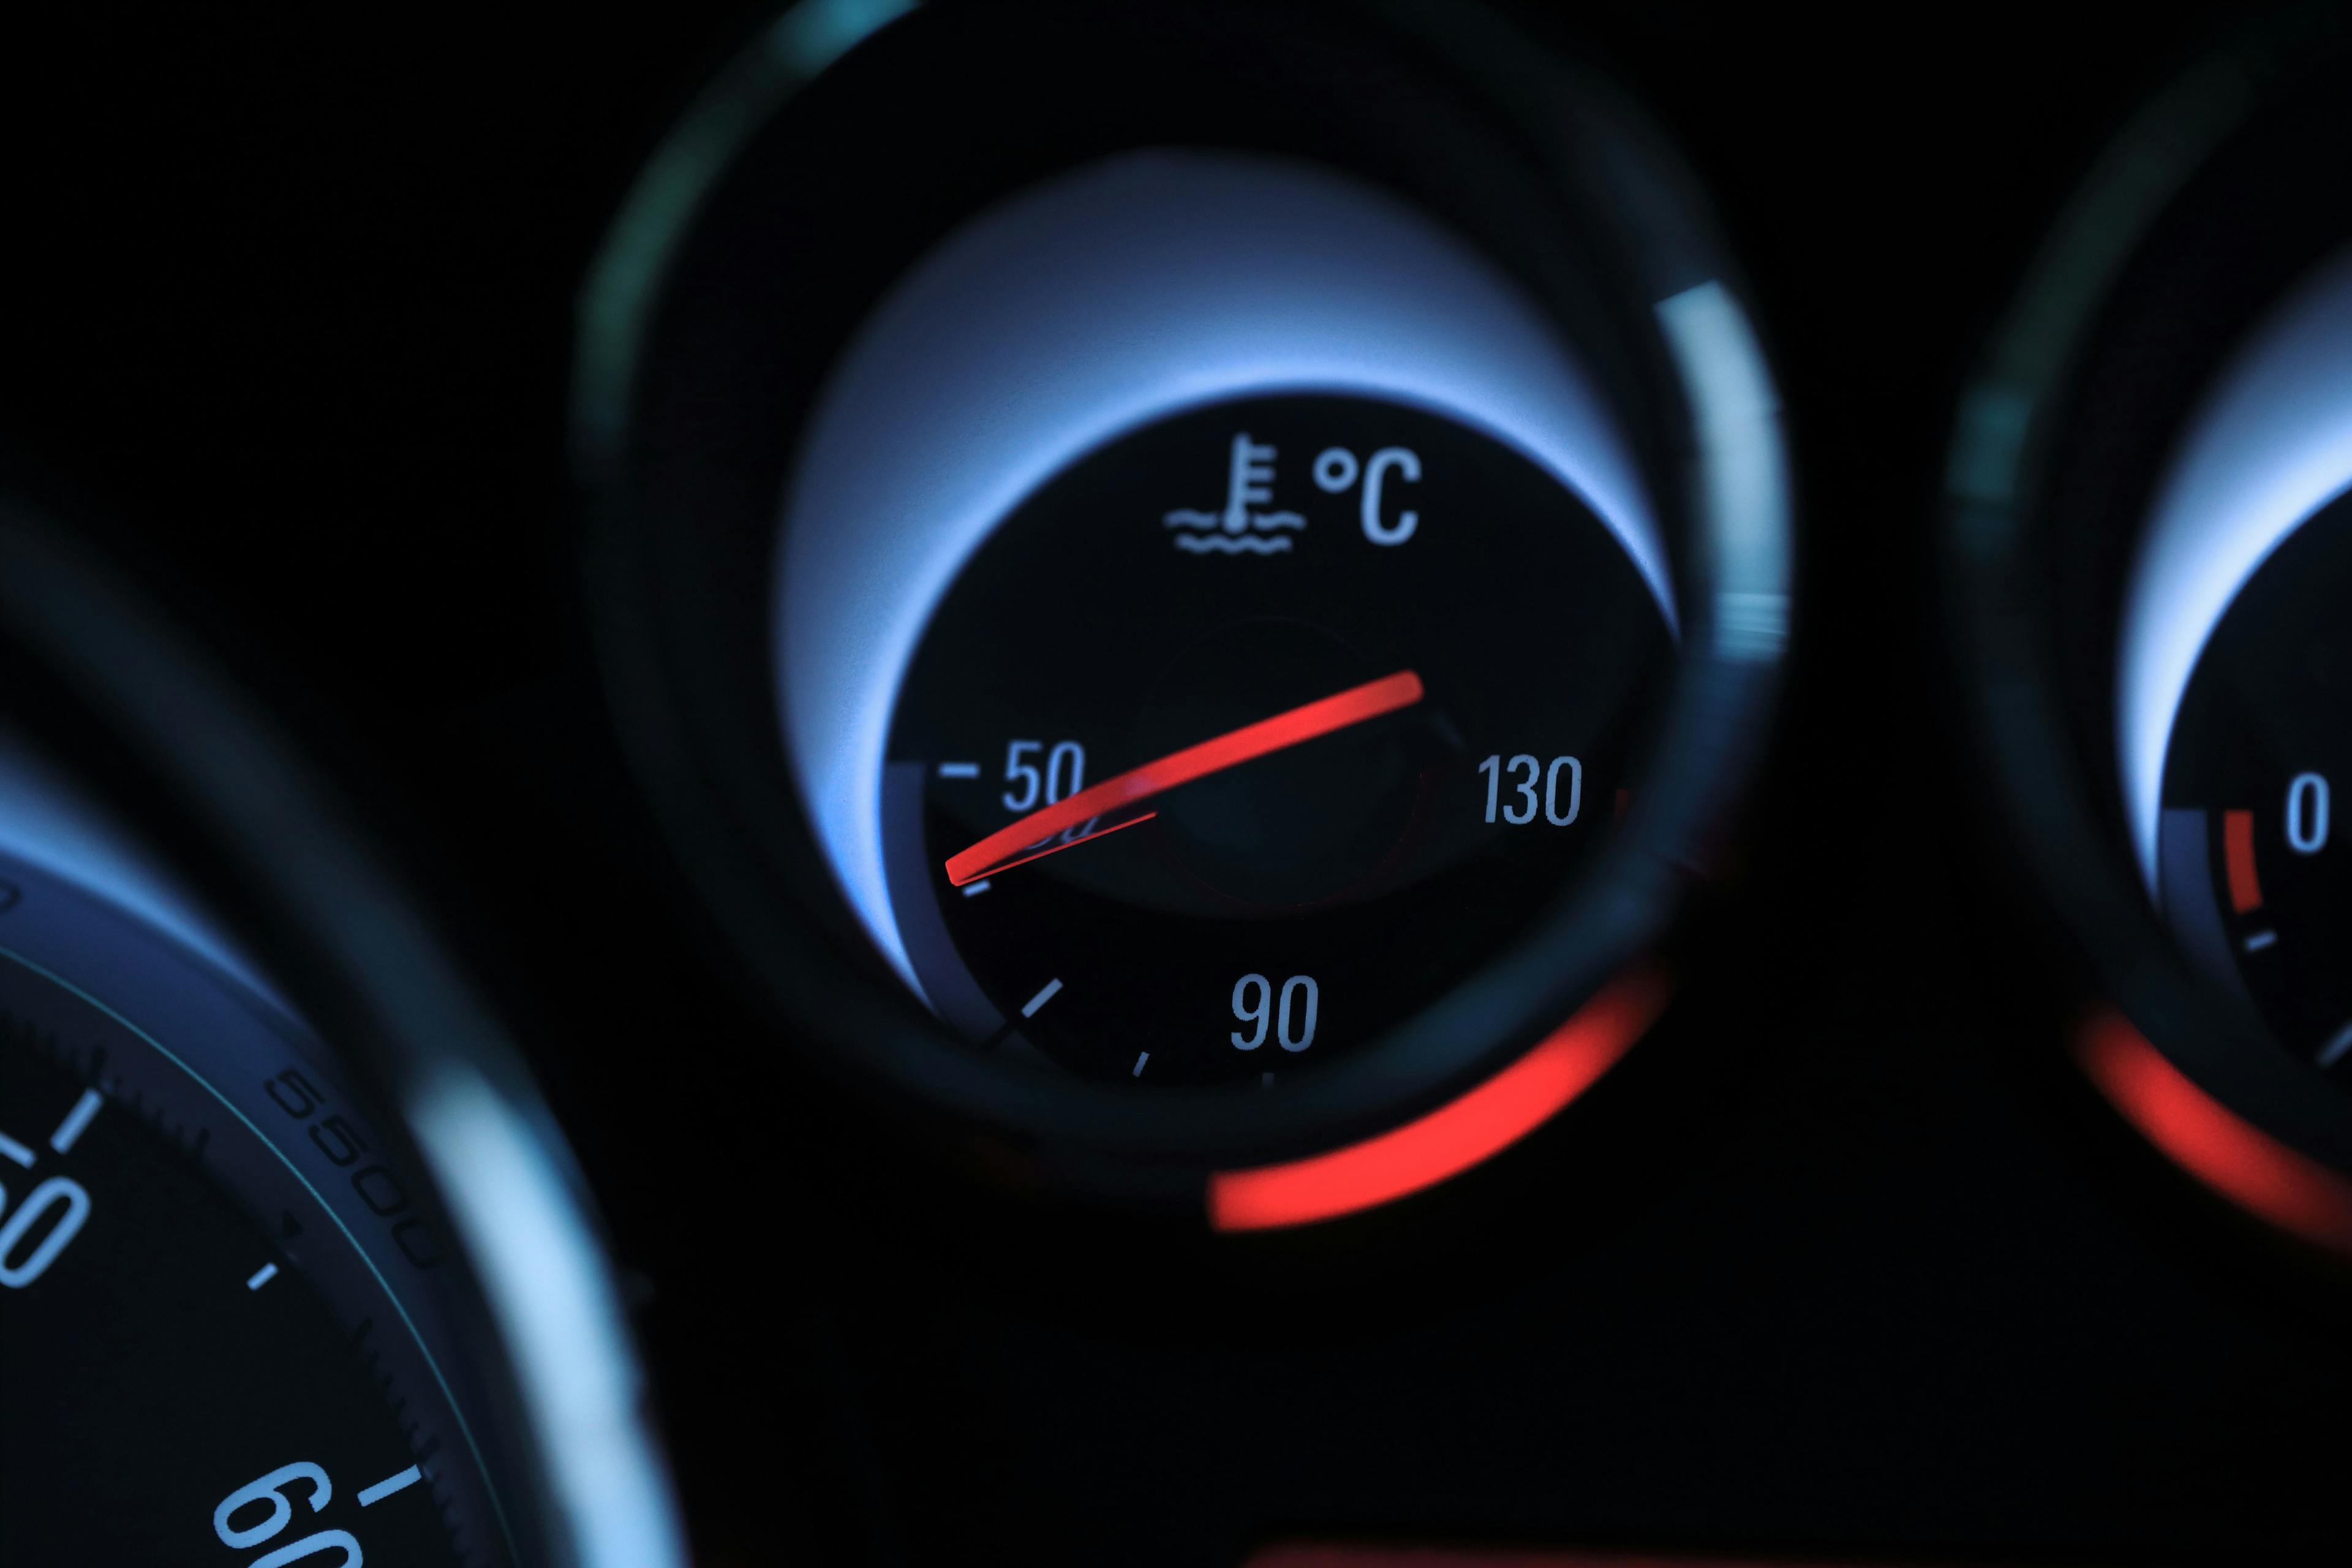 Témoin lumineux indiquant la température du moteur ©iStock